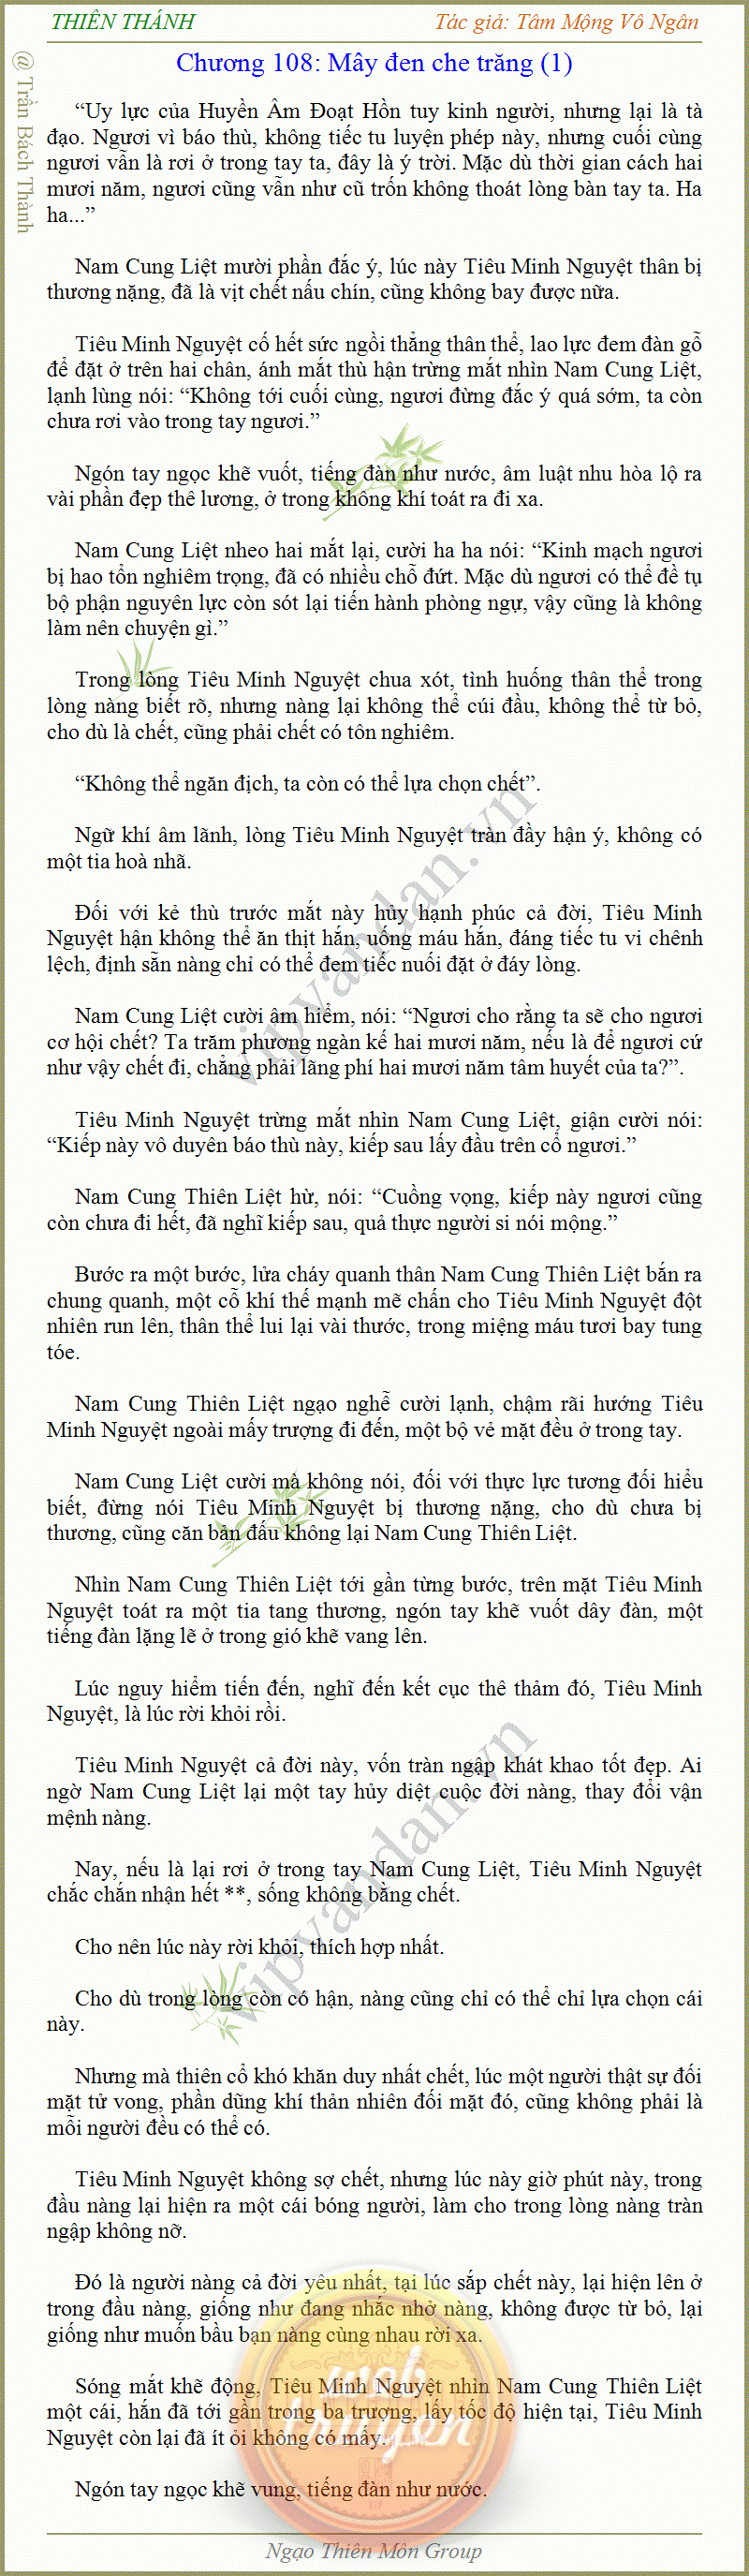 Thiên Thánh - Tâm Mộng Vô Ngân New Q 7 - Chương 74